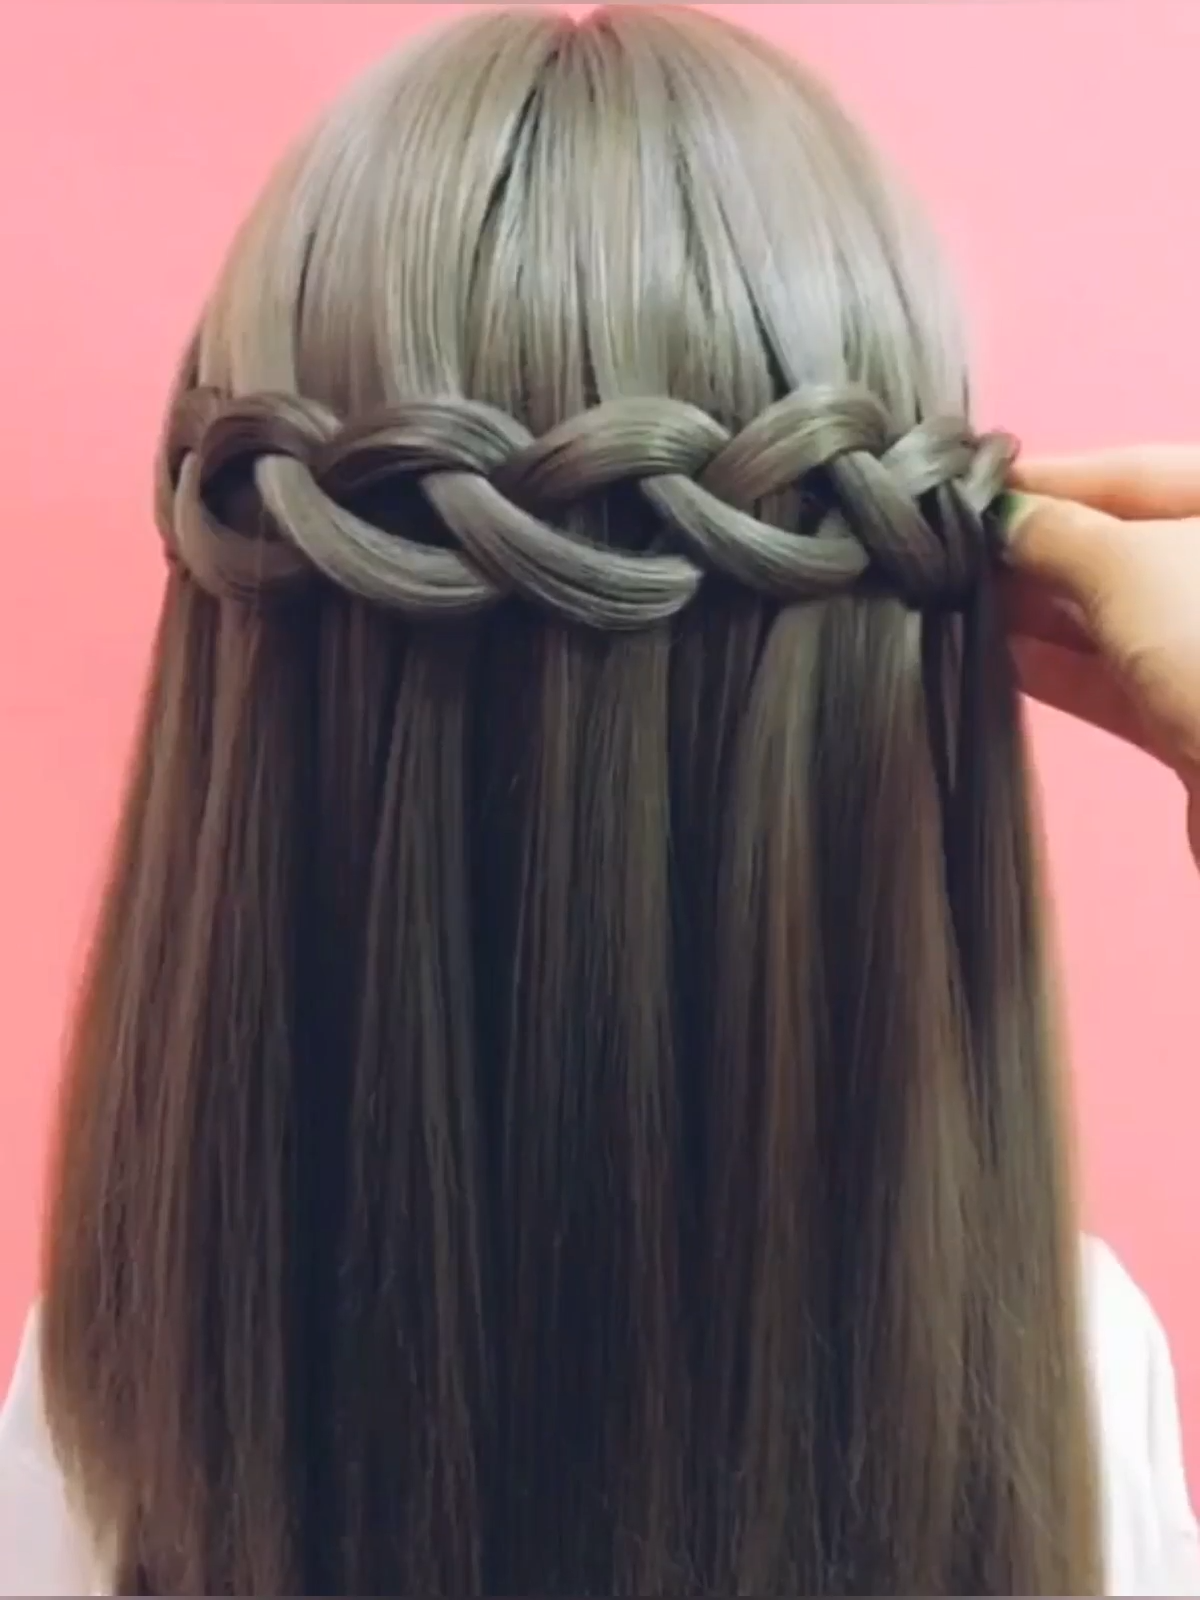 25+ cute and easy hairstyles | braided hairstyles | hair tutorials videos -   18 hair Bridesmaid how to ideas